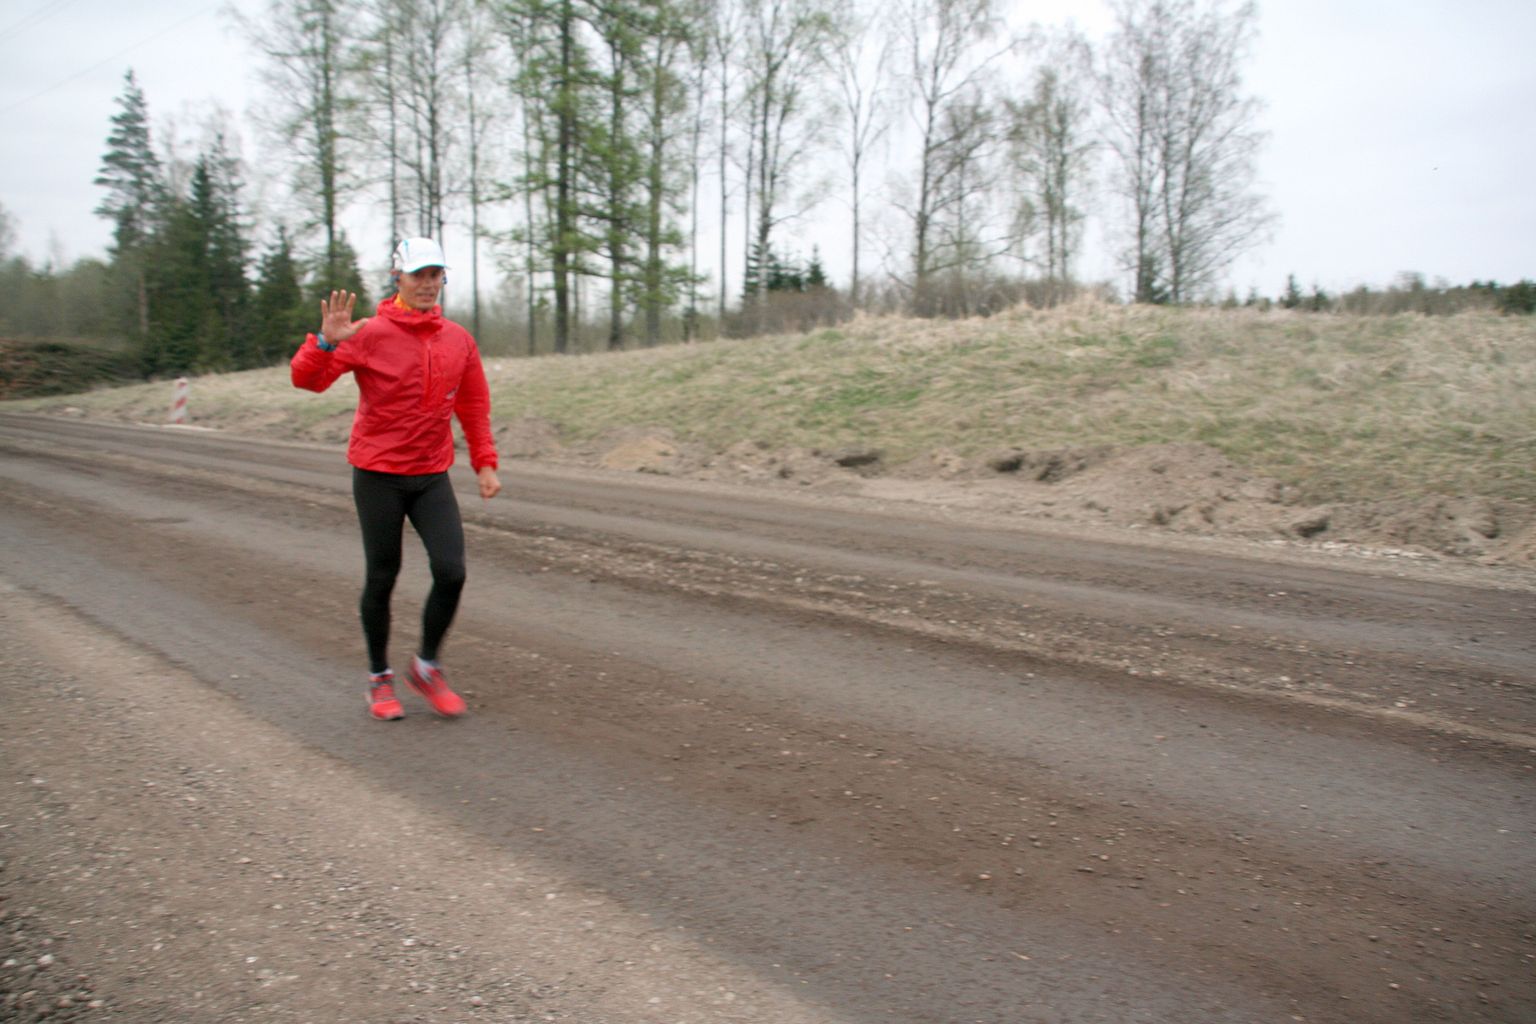 Joel Juht jooksmas Tallinnast Jõgevale. Lõpuni on jäänud umbes 13 kilomeetrit.